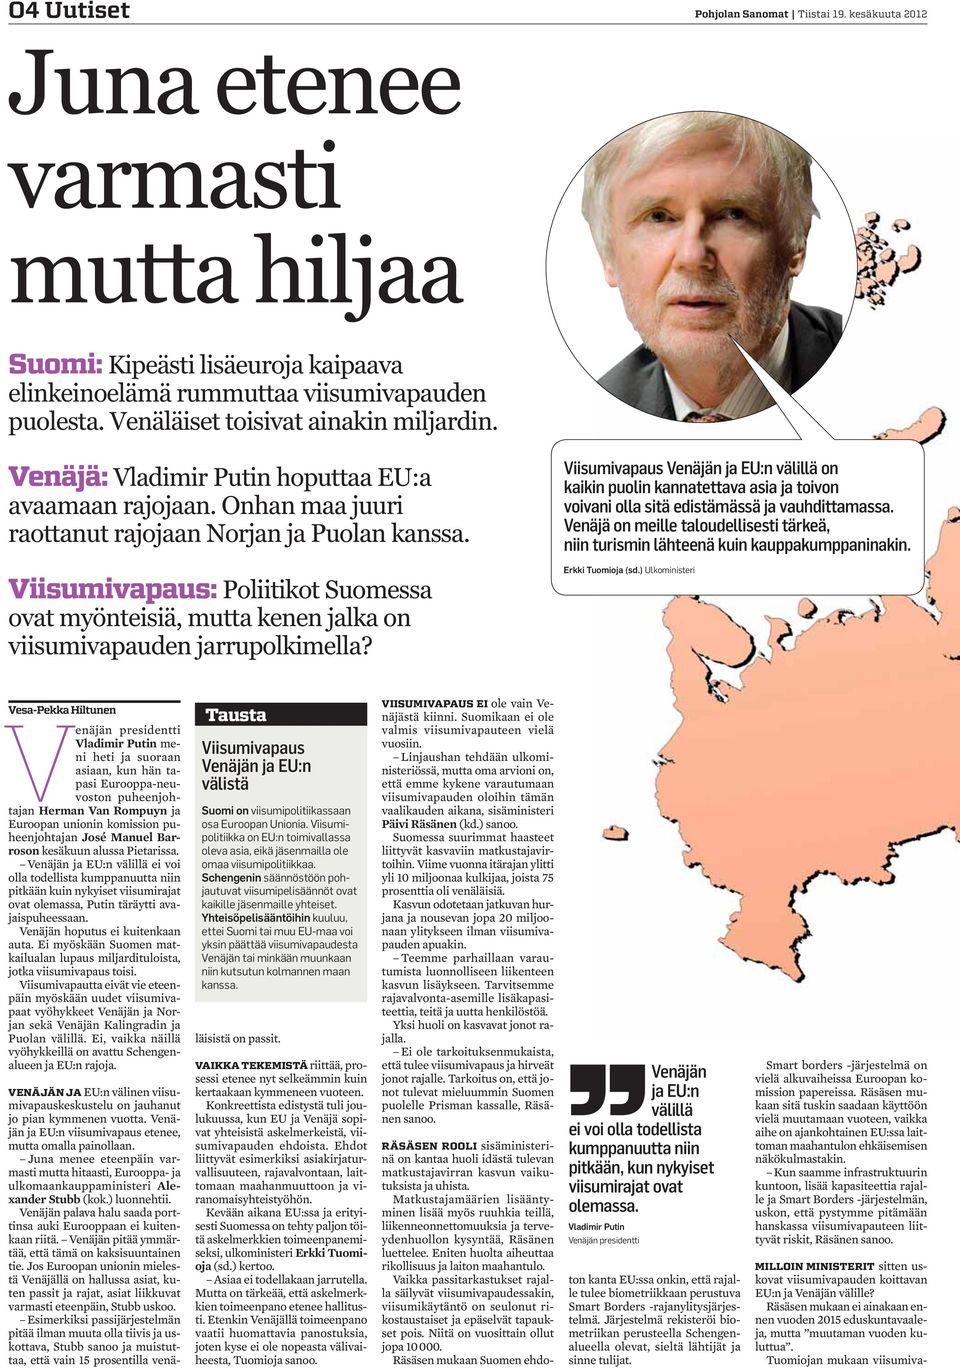 Viisumivapaus: Poliitikot Suomessa ovat myönteisiä, mutta kenen jalka on viisumivapauden jarrupolkimella?